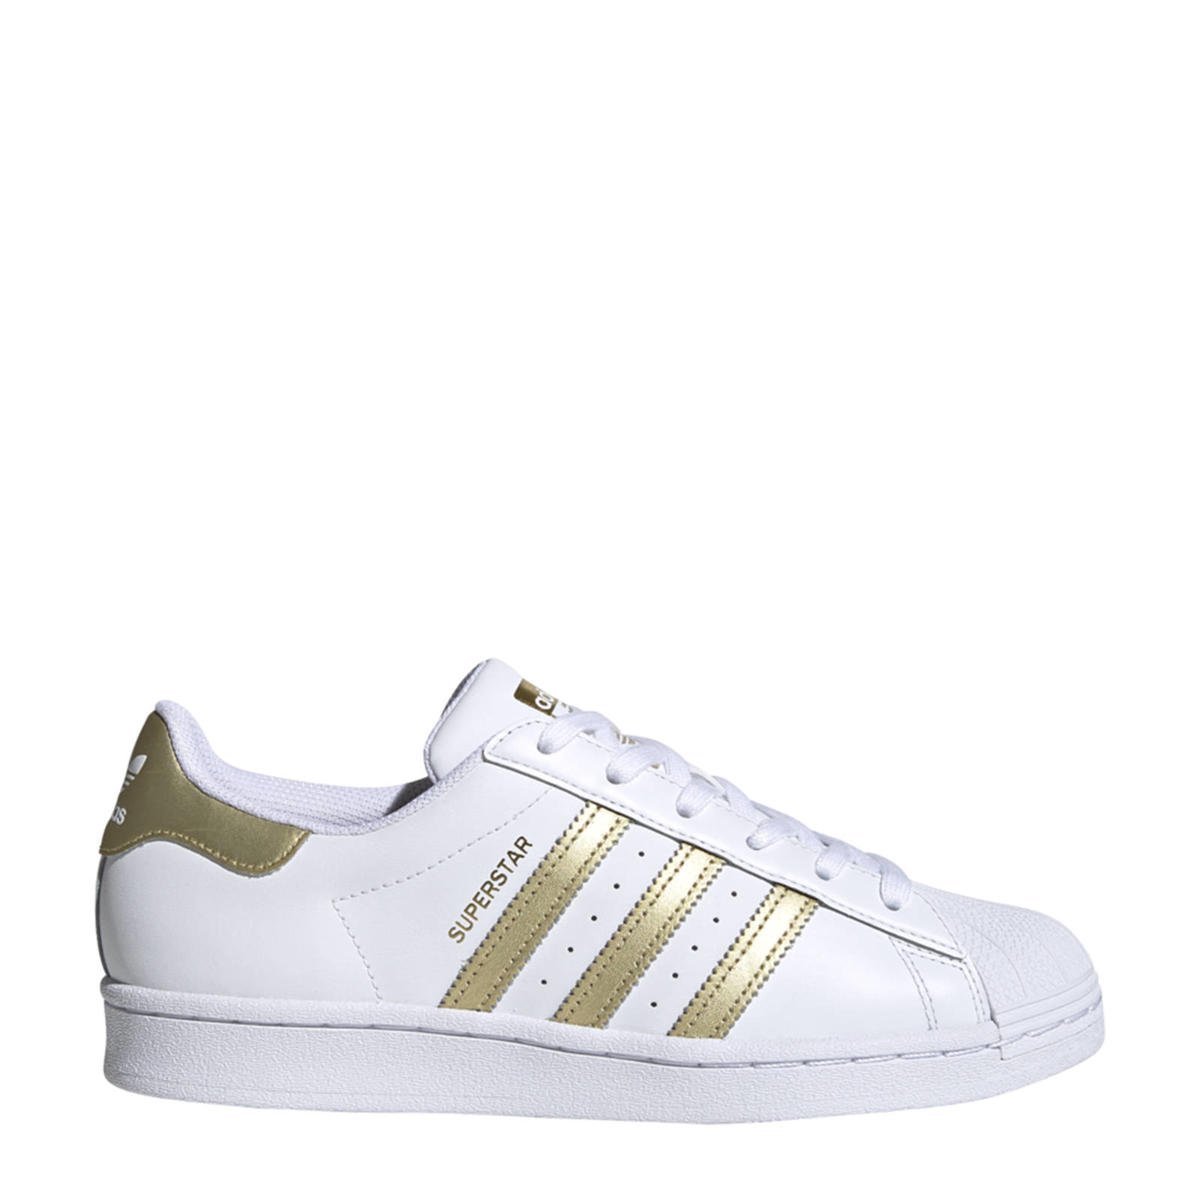 tij deugd Uitpakken adidas Originals Superstar sneakers wit/goud | wehkamp